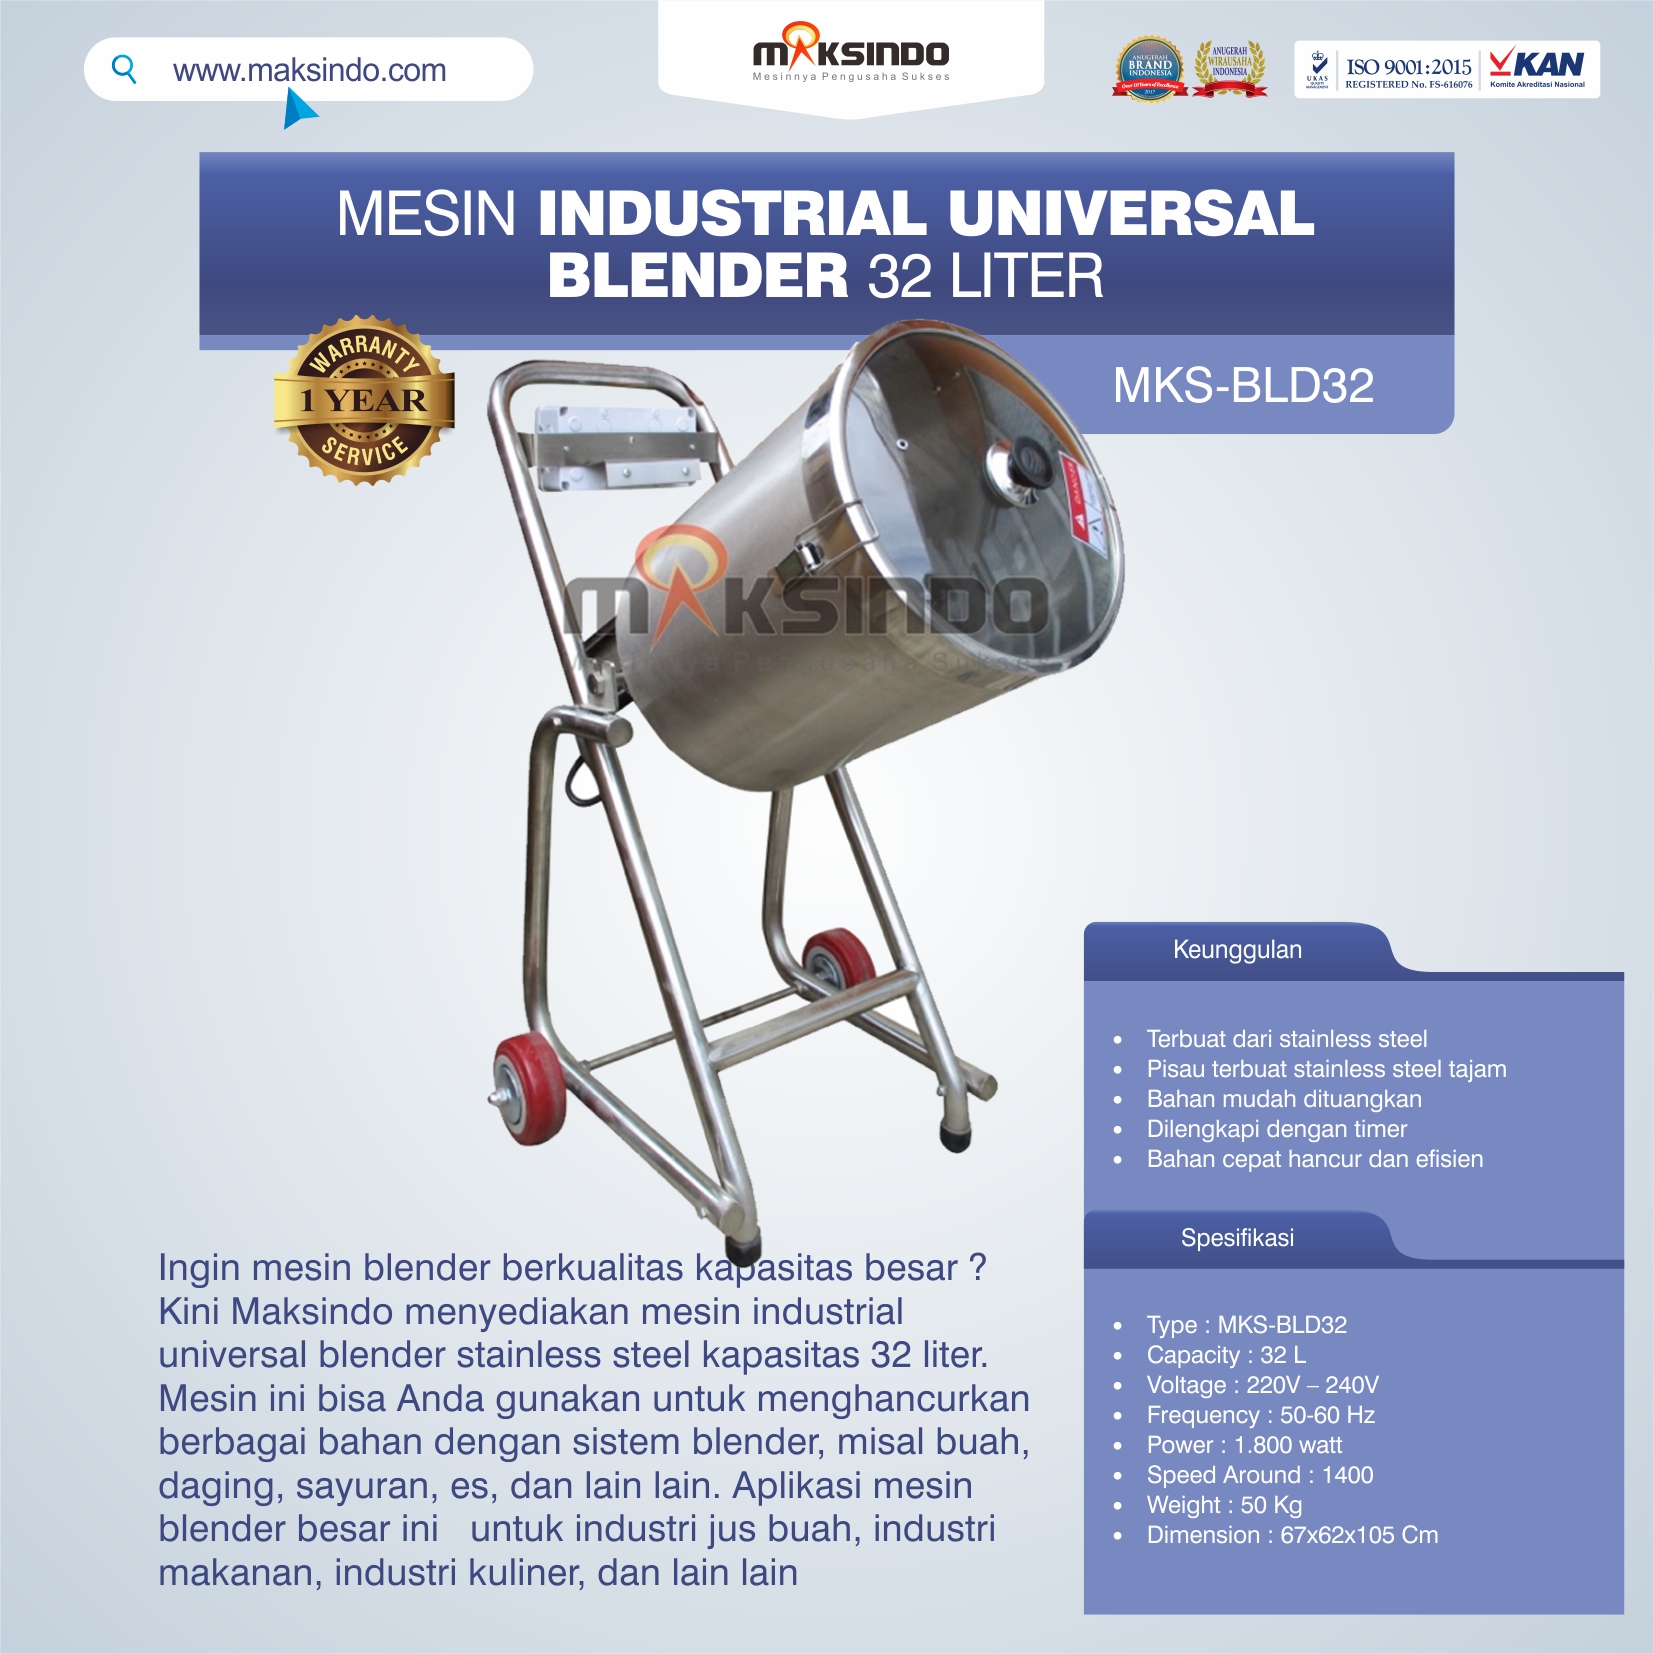 Jual Industrial Universal Blender 32 Liter di Malang